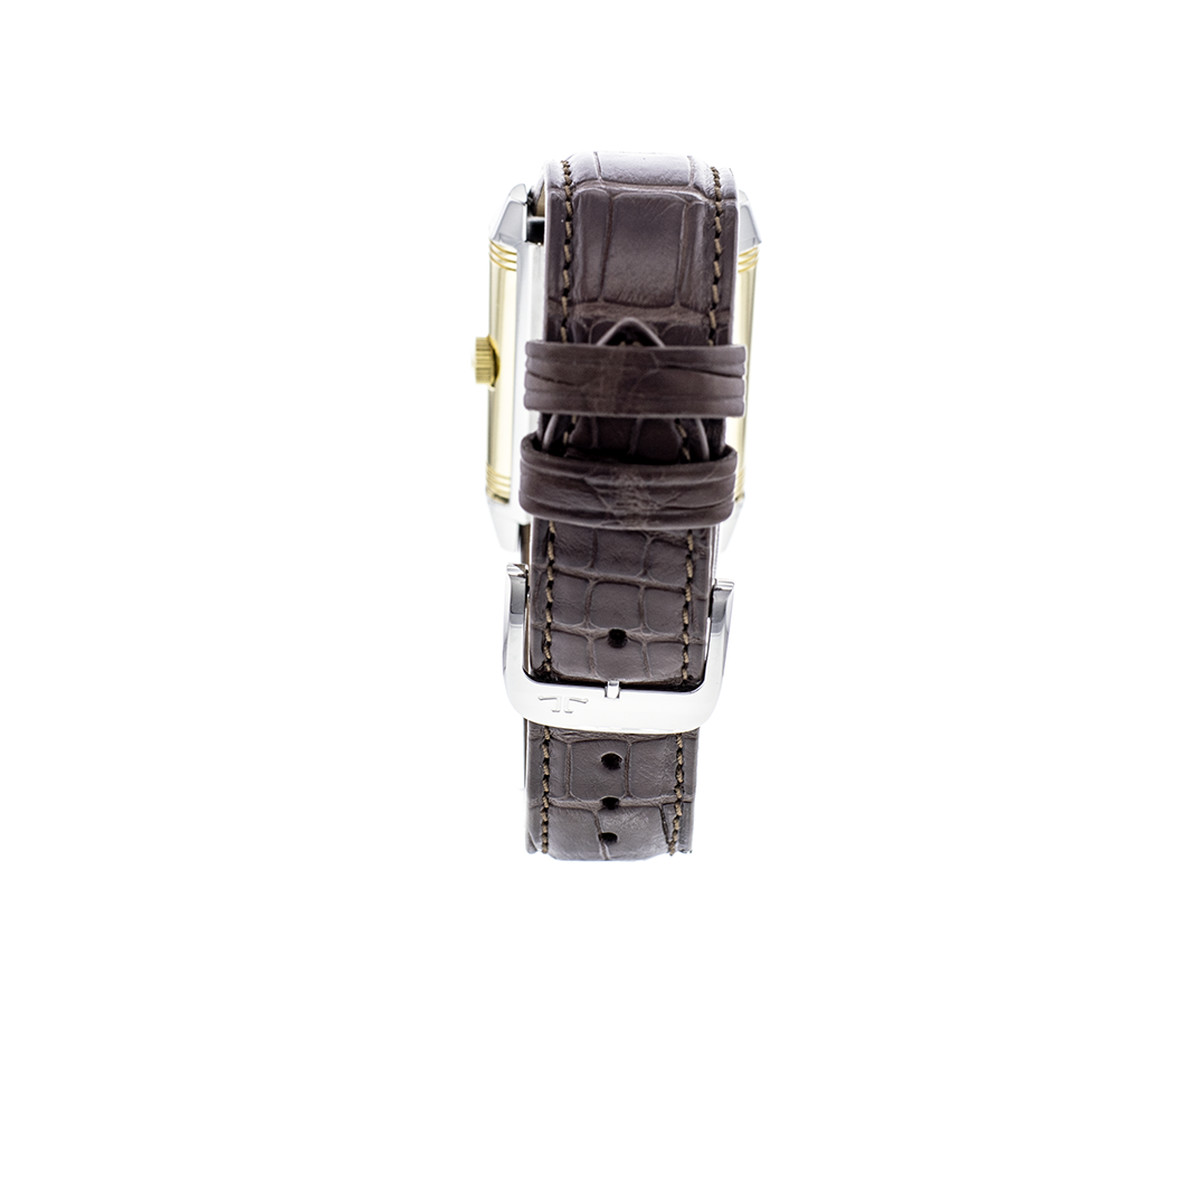 Montre d'occasion Jaeger Lecoultre Reverso mécanique homme or jaune 750 bracelet cuir marron - vue 4